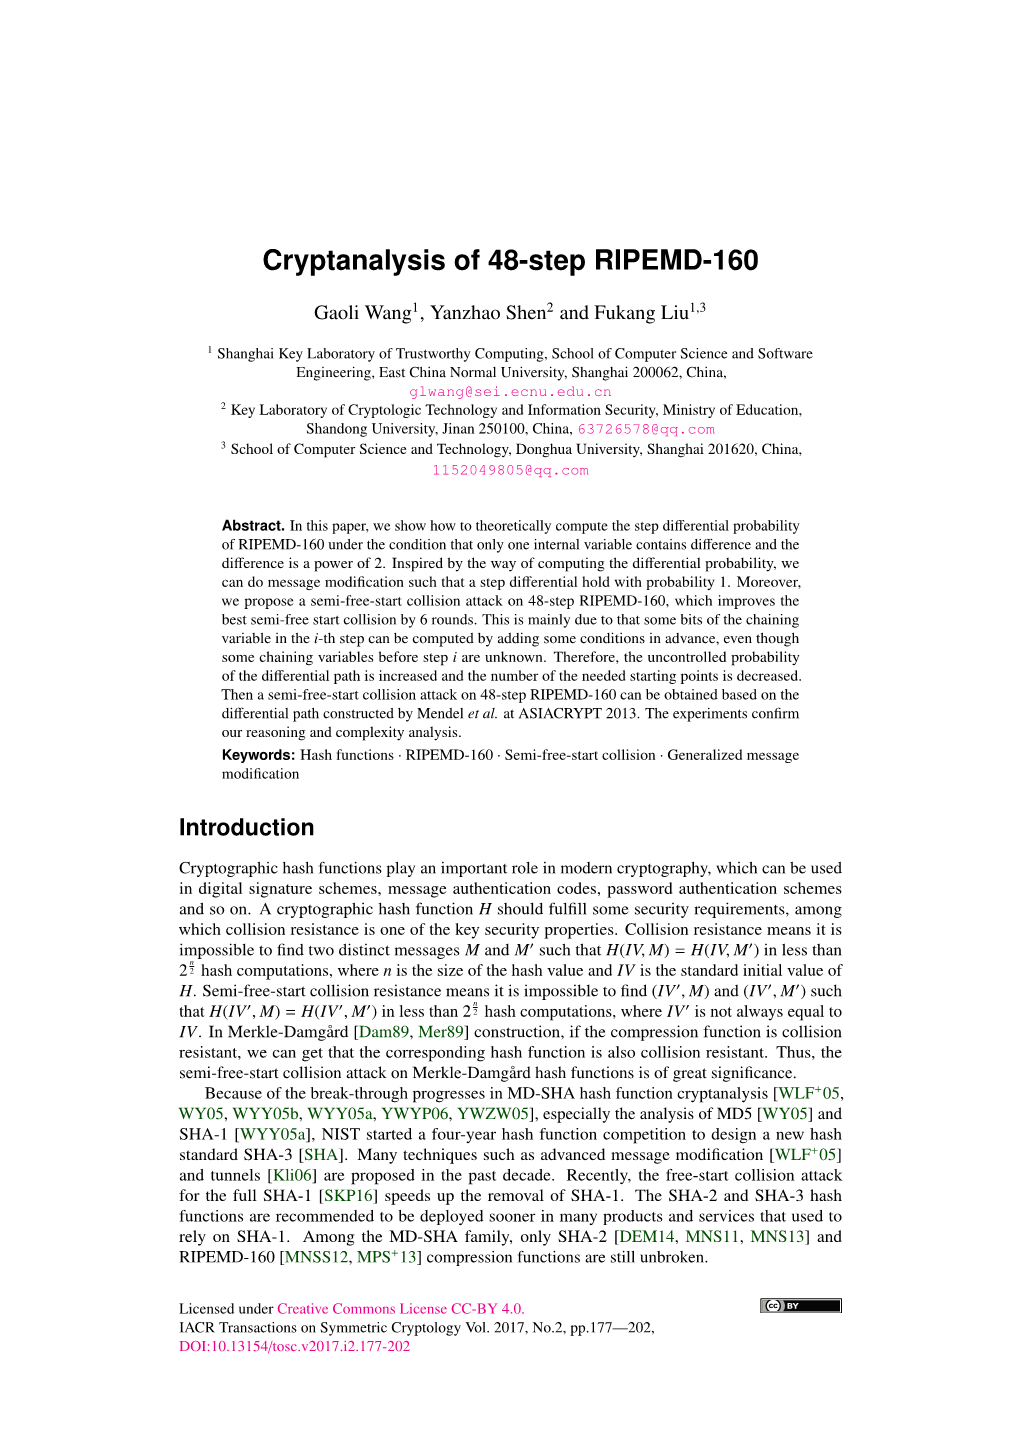 Cryptanalysis of 48-Step RIPEMD-160